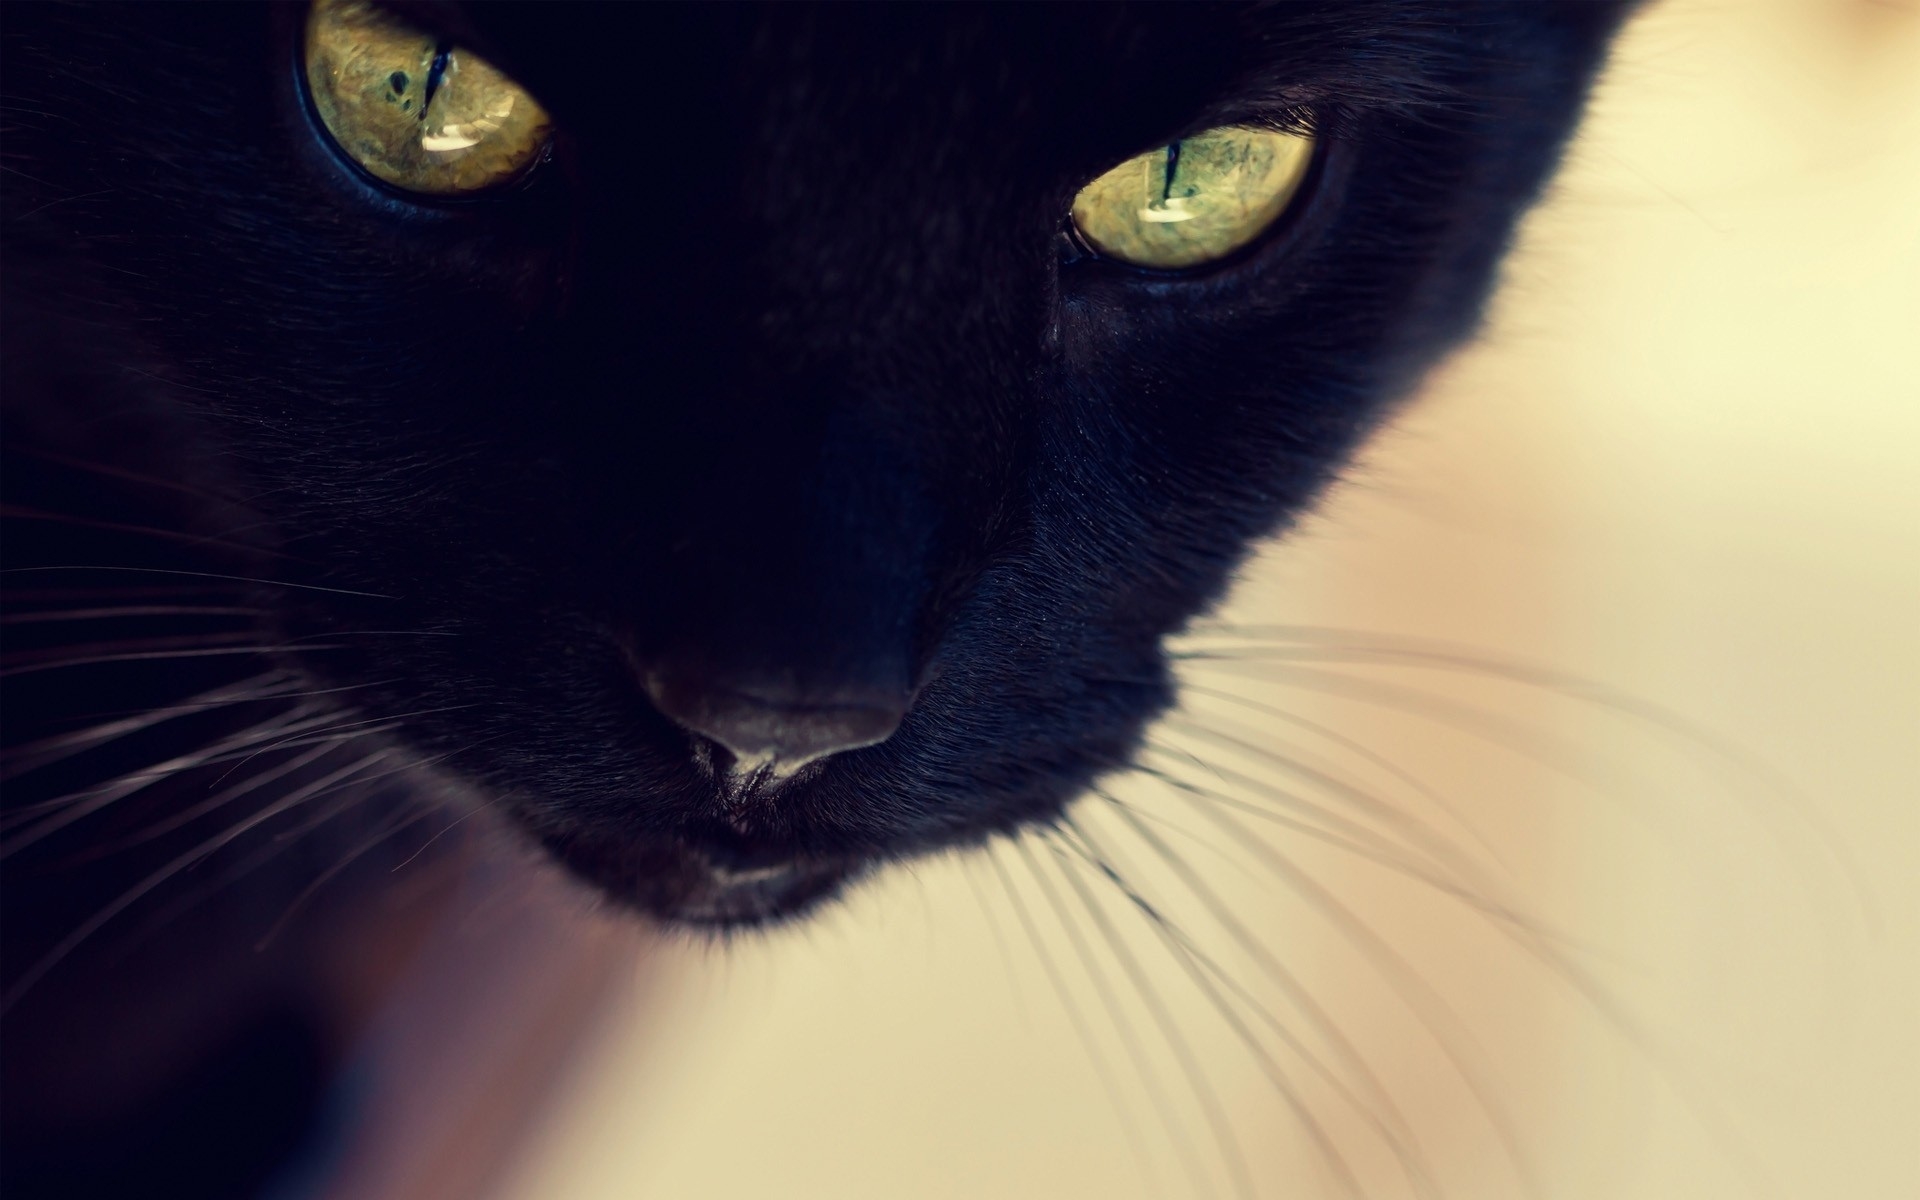 Картинки Черная кошка, лицо, глаза, нос, усы фото и обои на рабочий стол